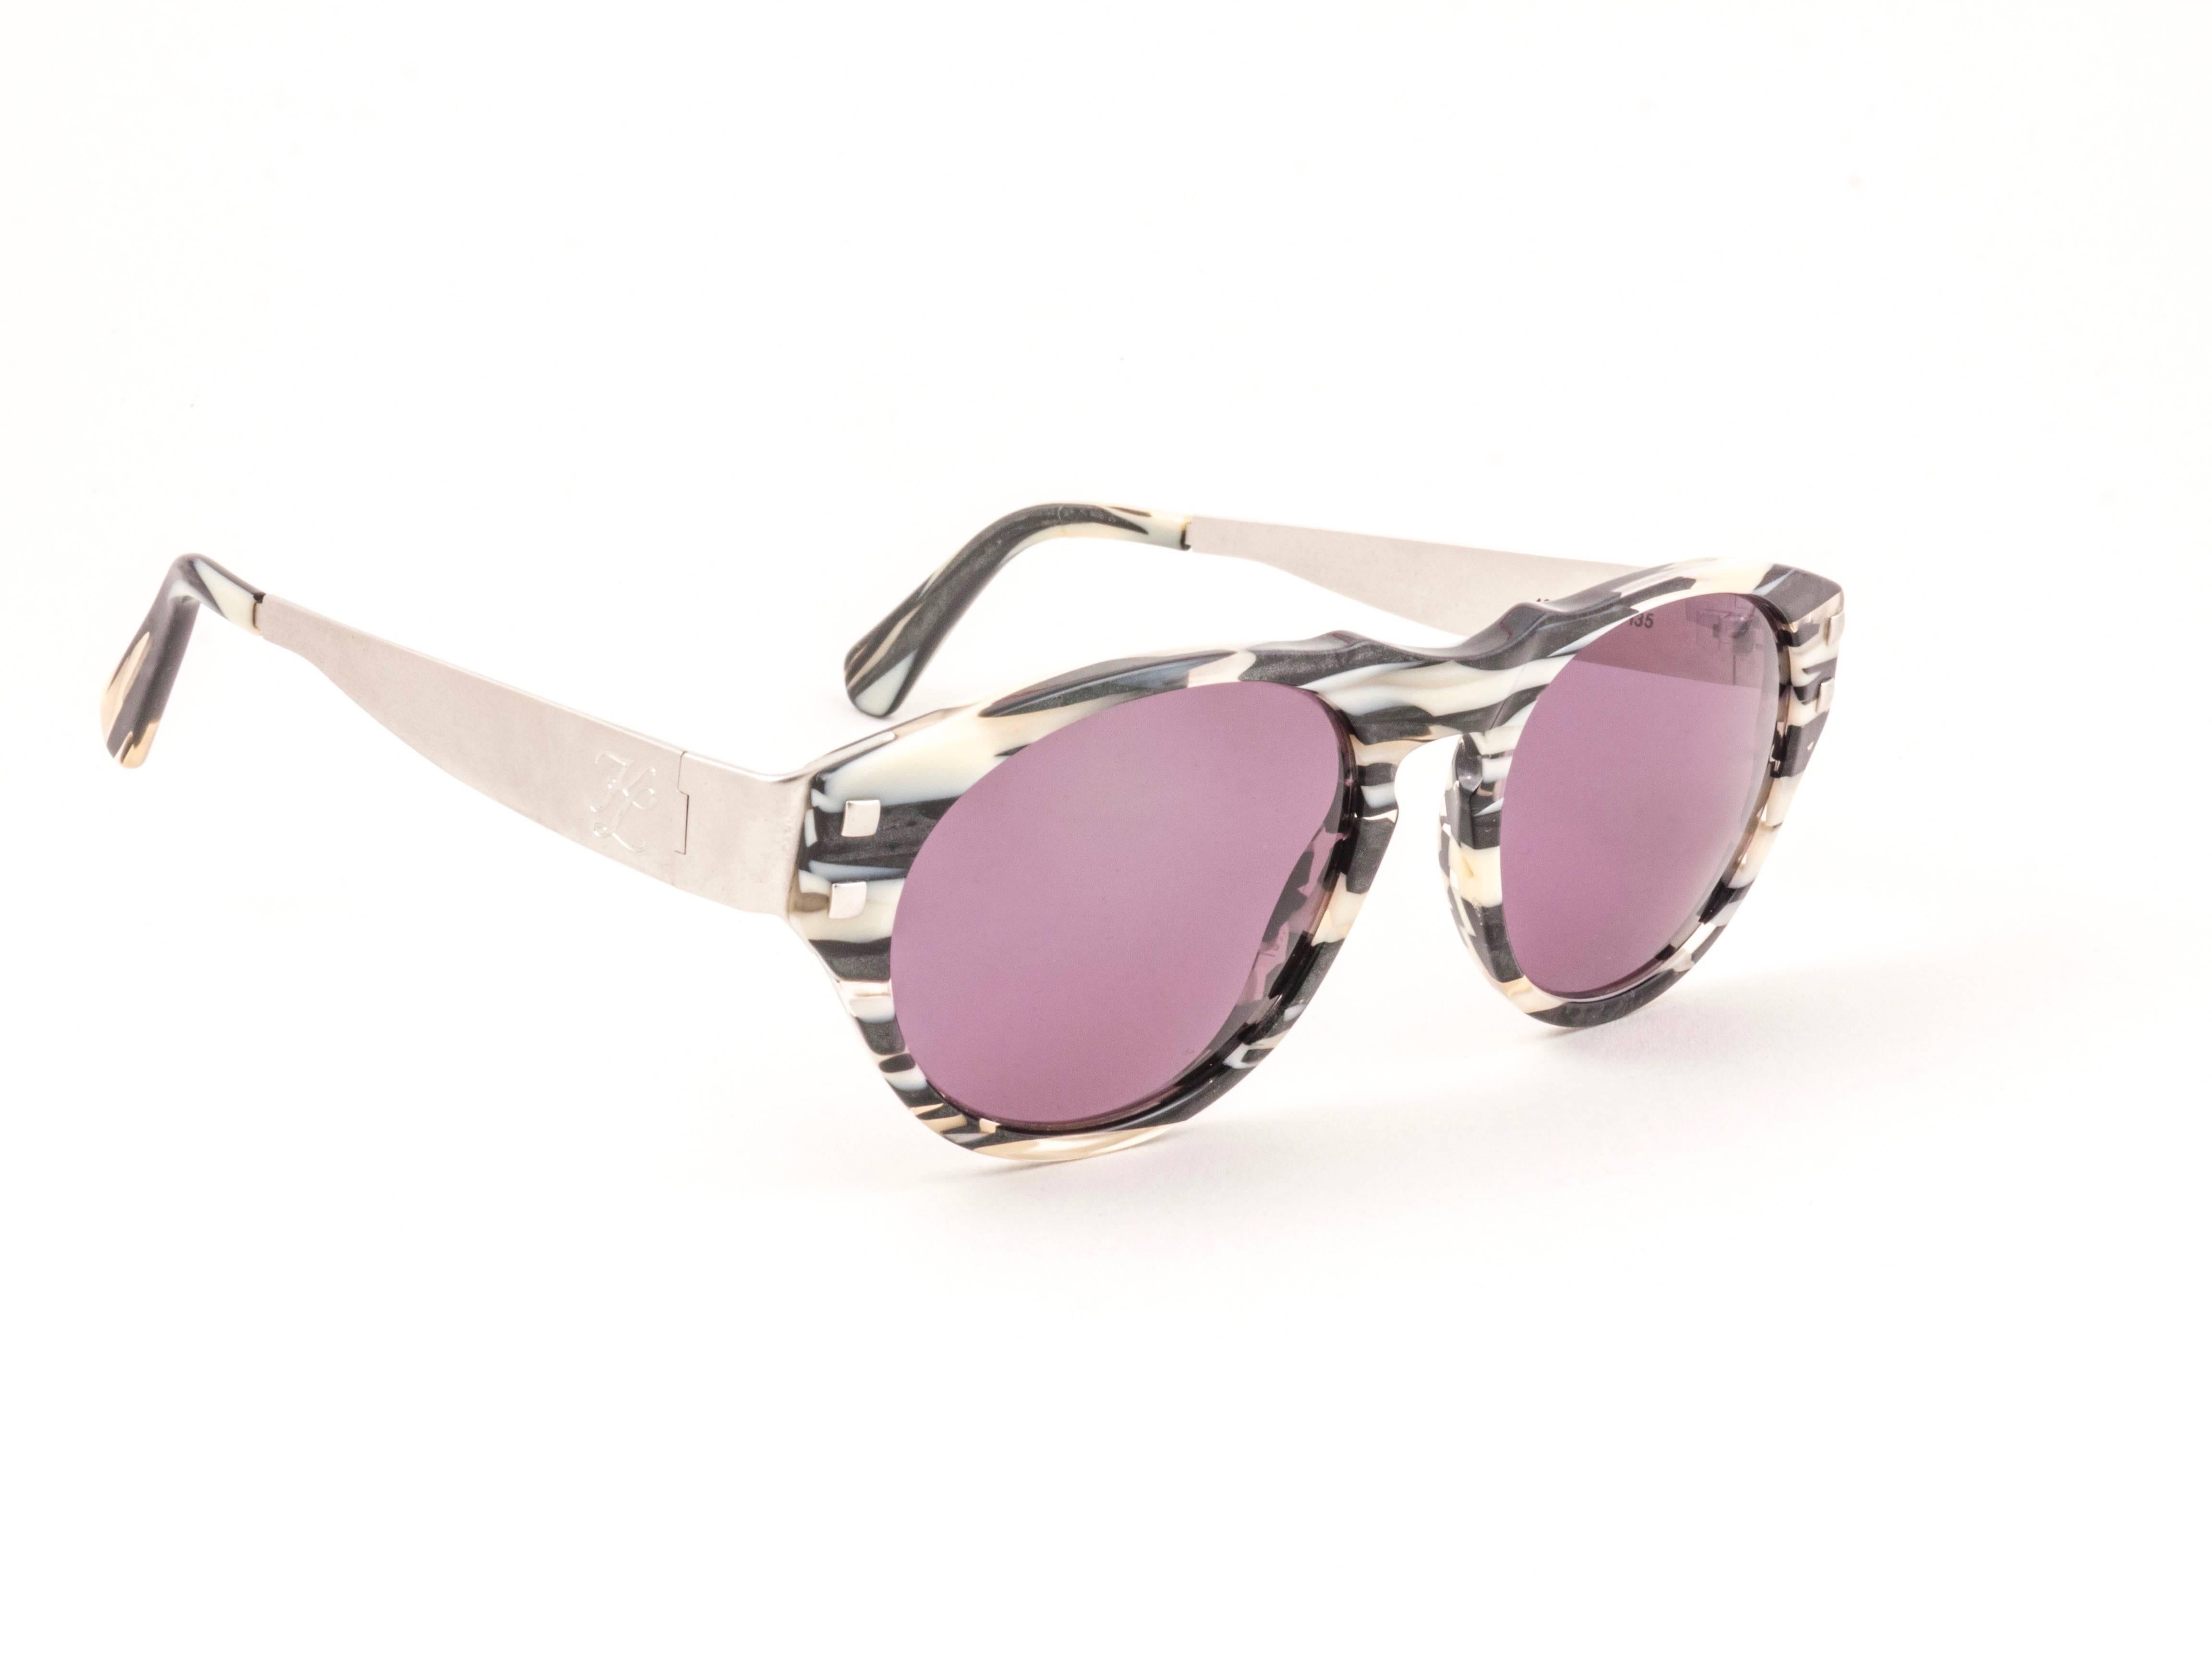 Erstaunlich Paar New vintage 1980's 4602 b 135 Karl Lagerfeld schwarz & weiß schwarzes Mosaik Sonnenbrille Framing ein Paar rosa magenta Gläser.
 
 Neu, nie getragen oder ausgestellt. Ein echtes Modestatement.